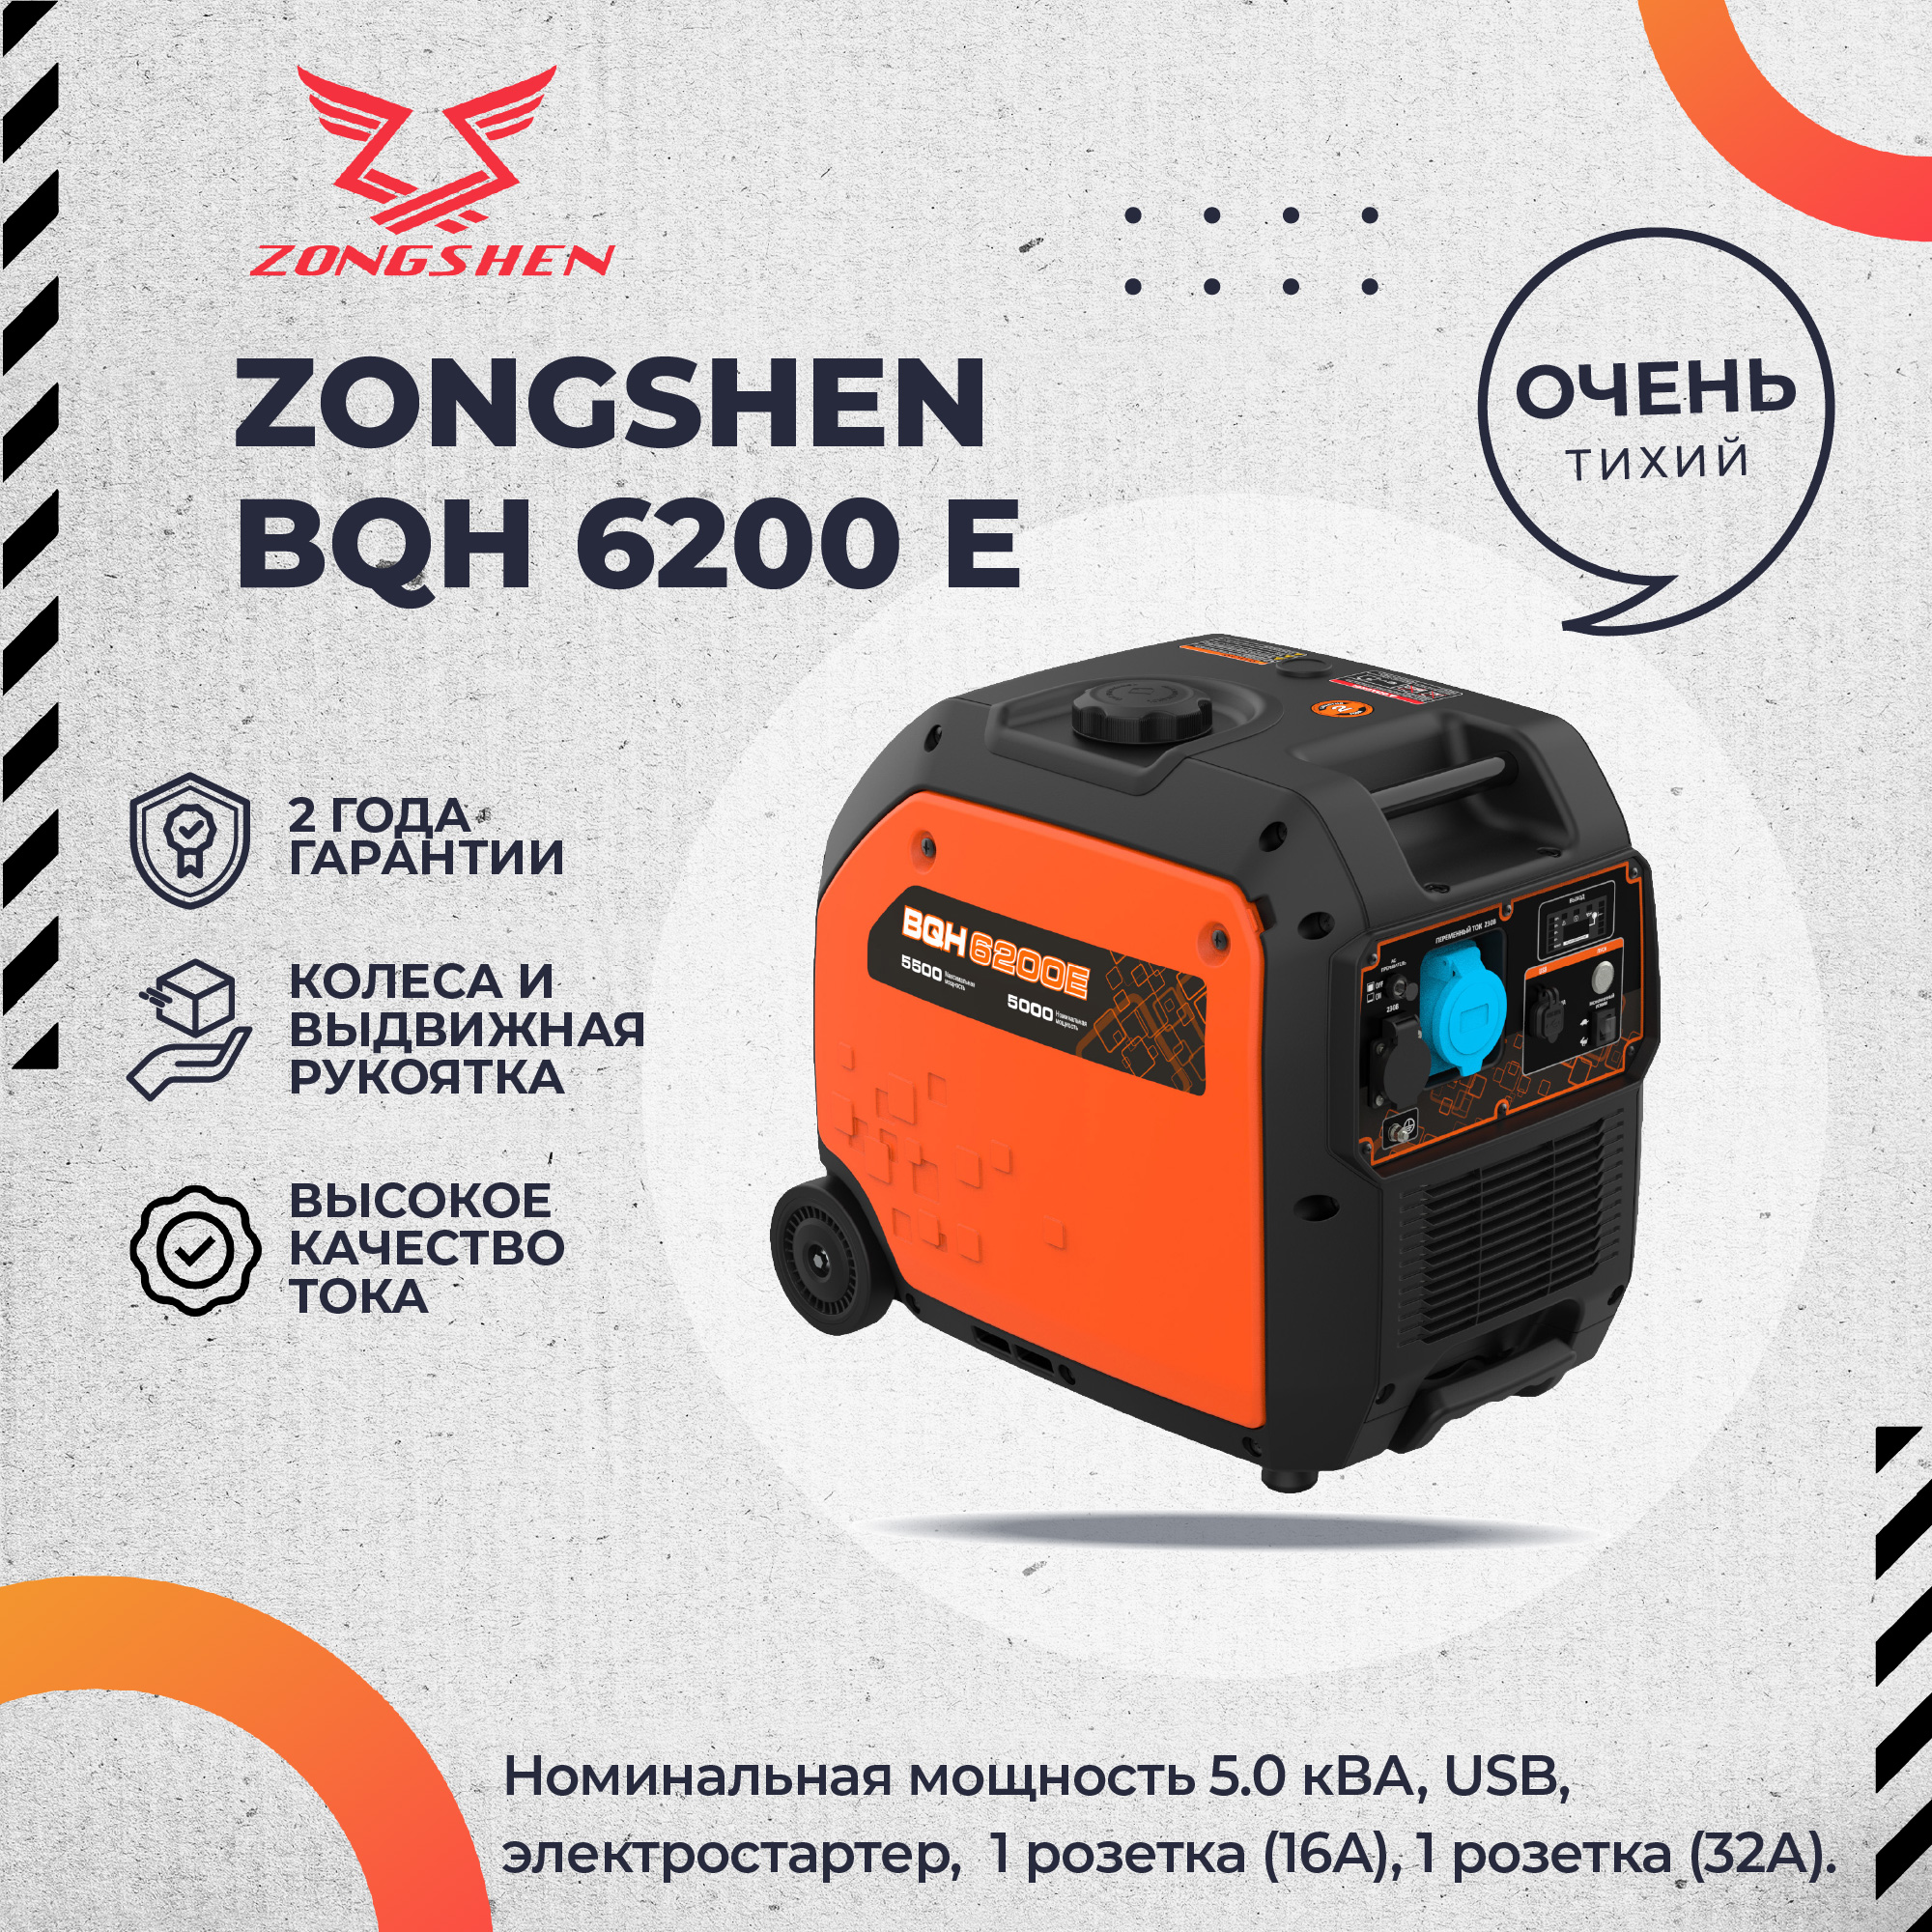 Бензиновый инверторный генератор Zongshen BQH 6200 E